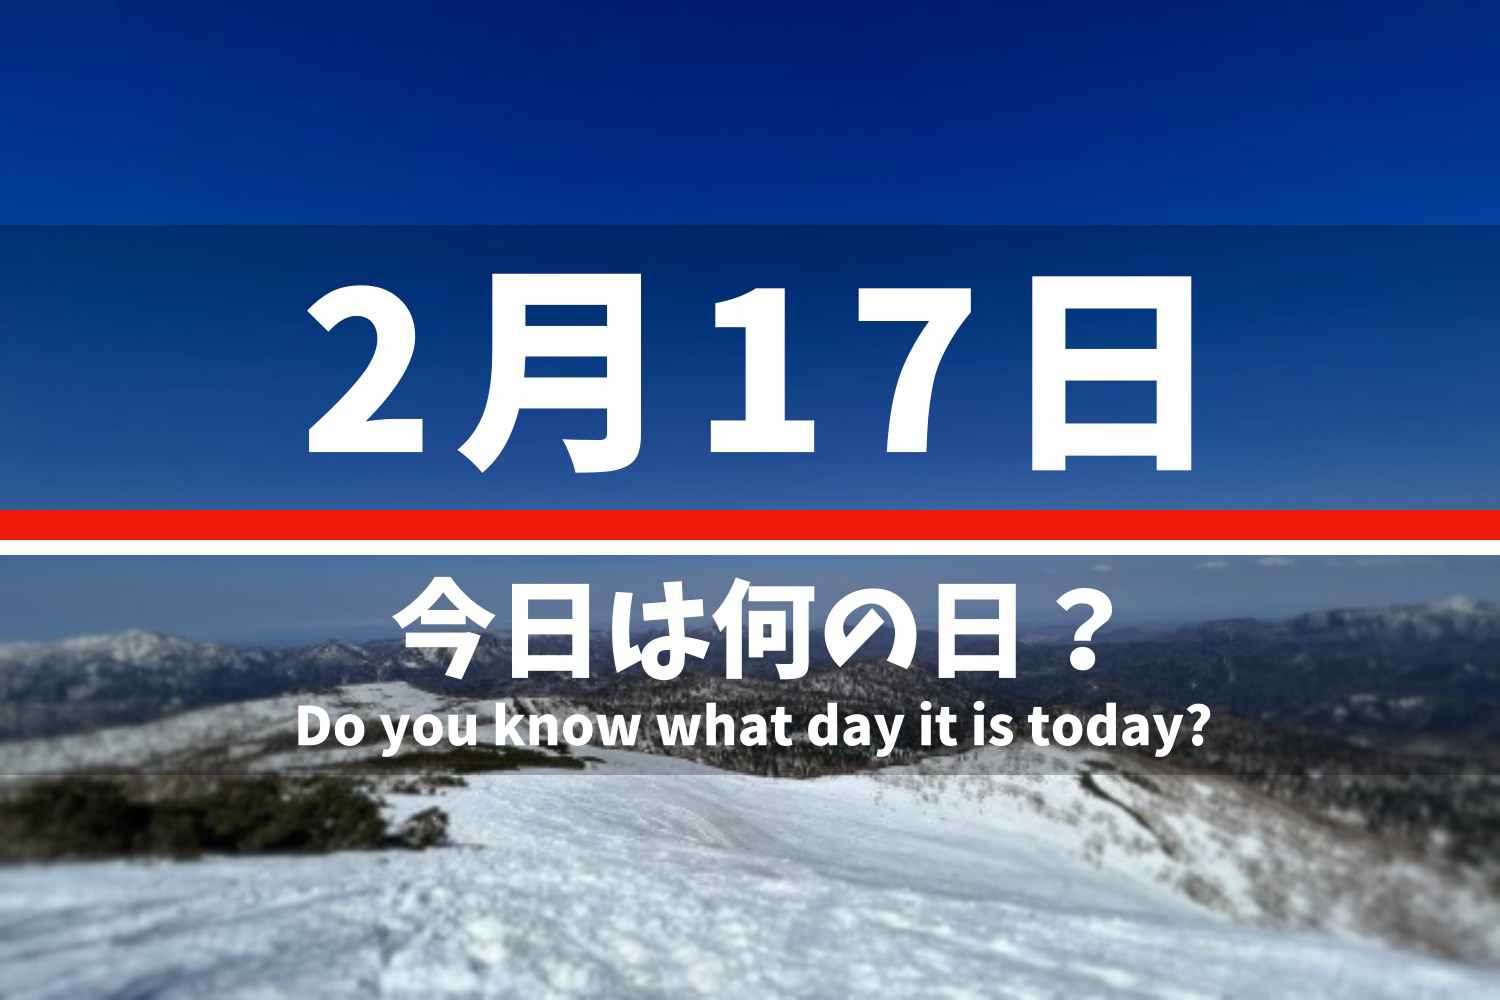 2.17 今日は何の日？